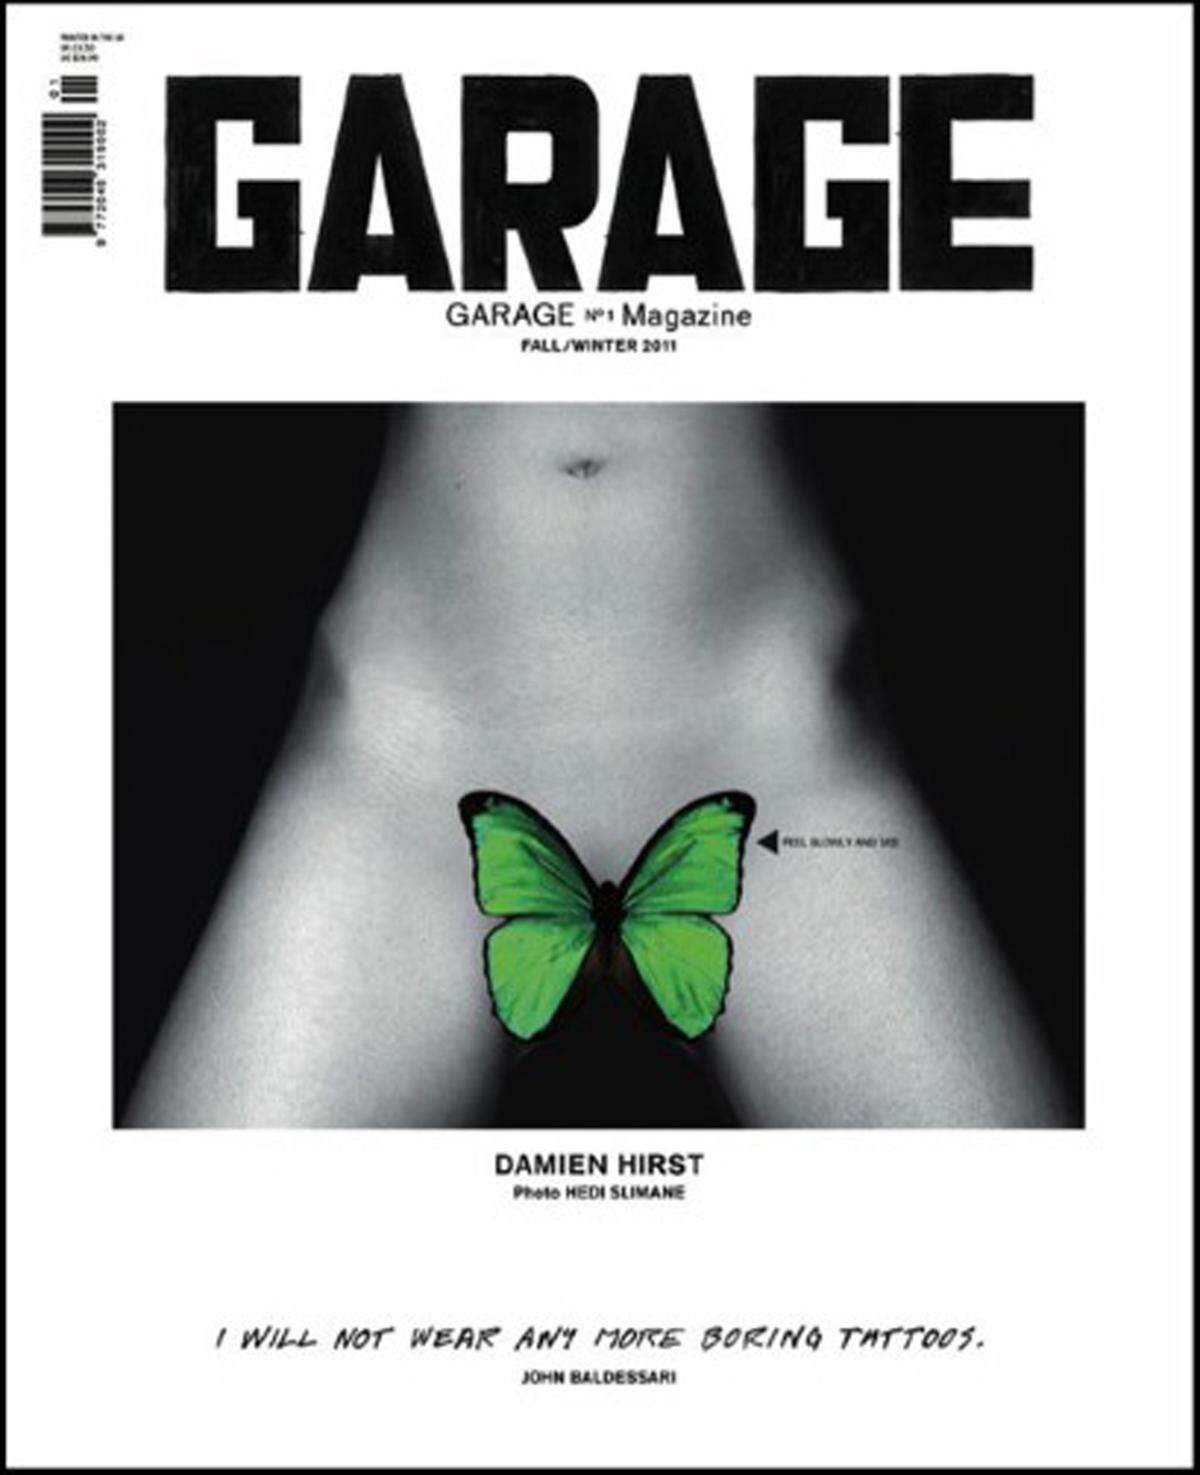 Ein Tattoo im Intimbereich war 2011 am von Damien Hirst gestalteten Cover des Garage Magazins ein Aufreger. Kurzerhand wurde das Bild mit einem grünen Sticker in Form eines Schmetterlings überklebt.